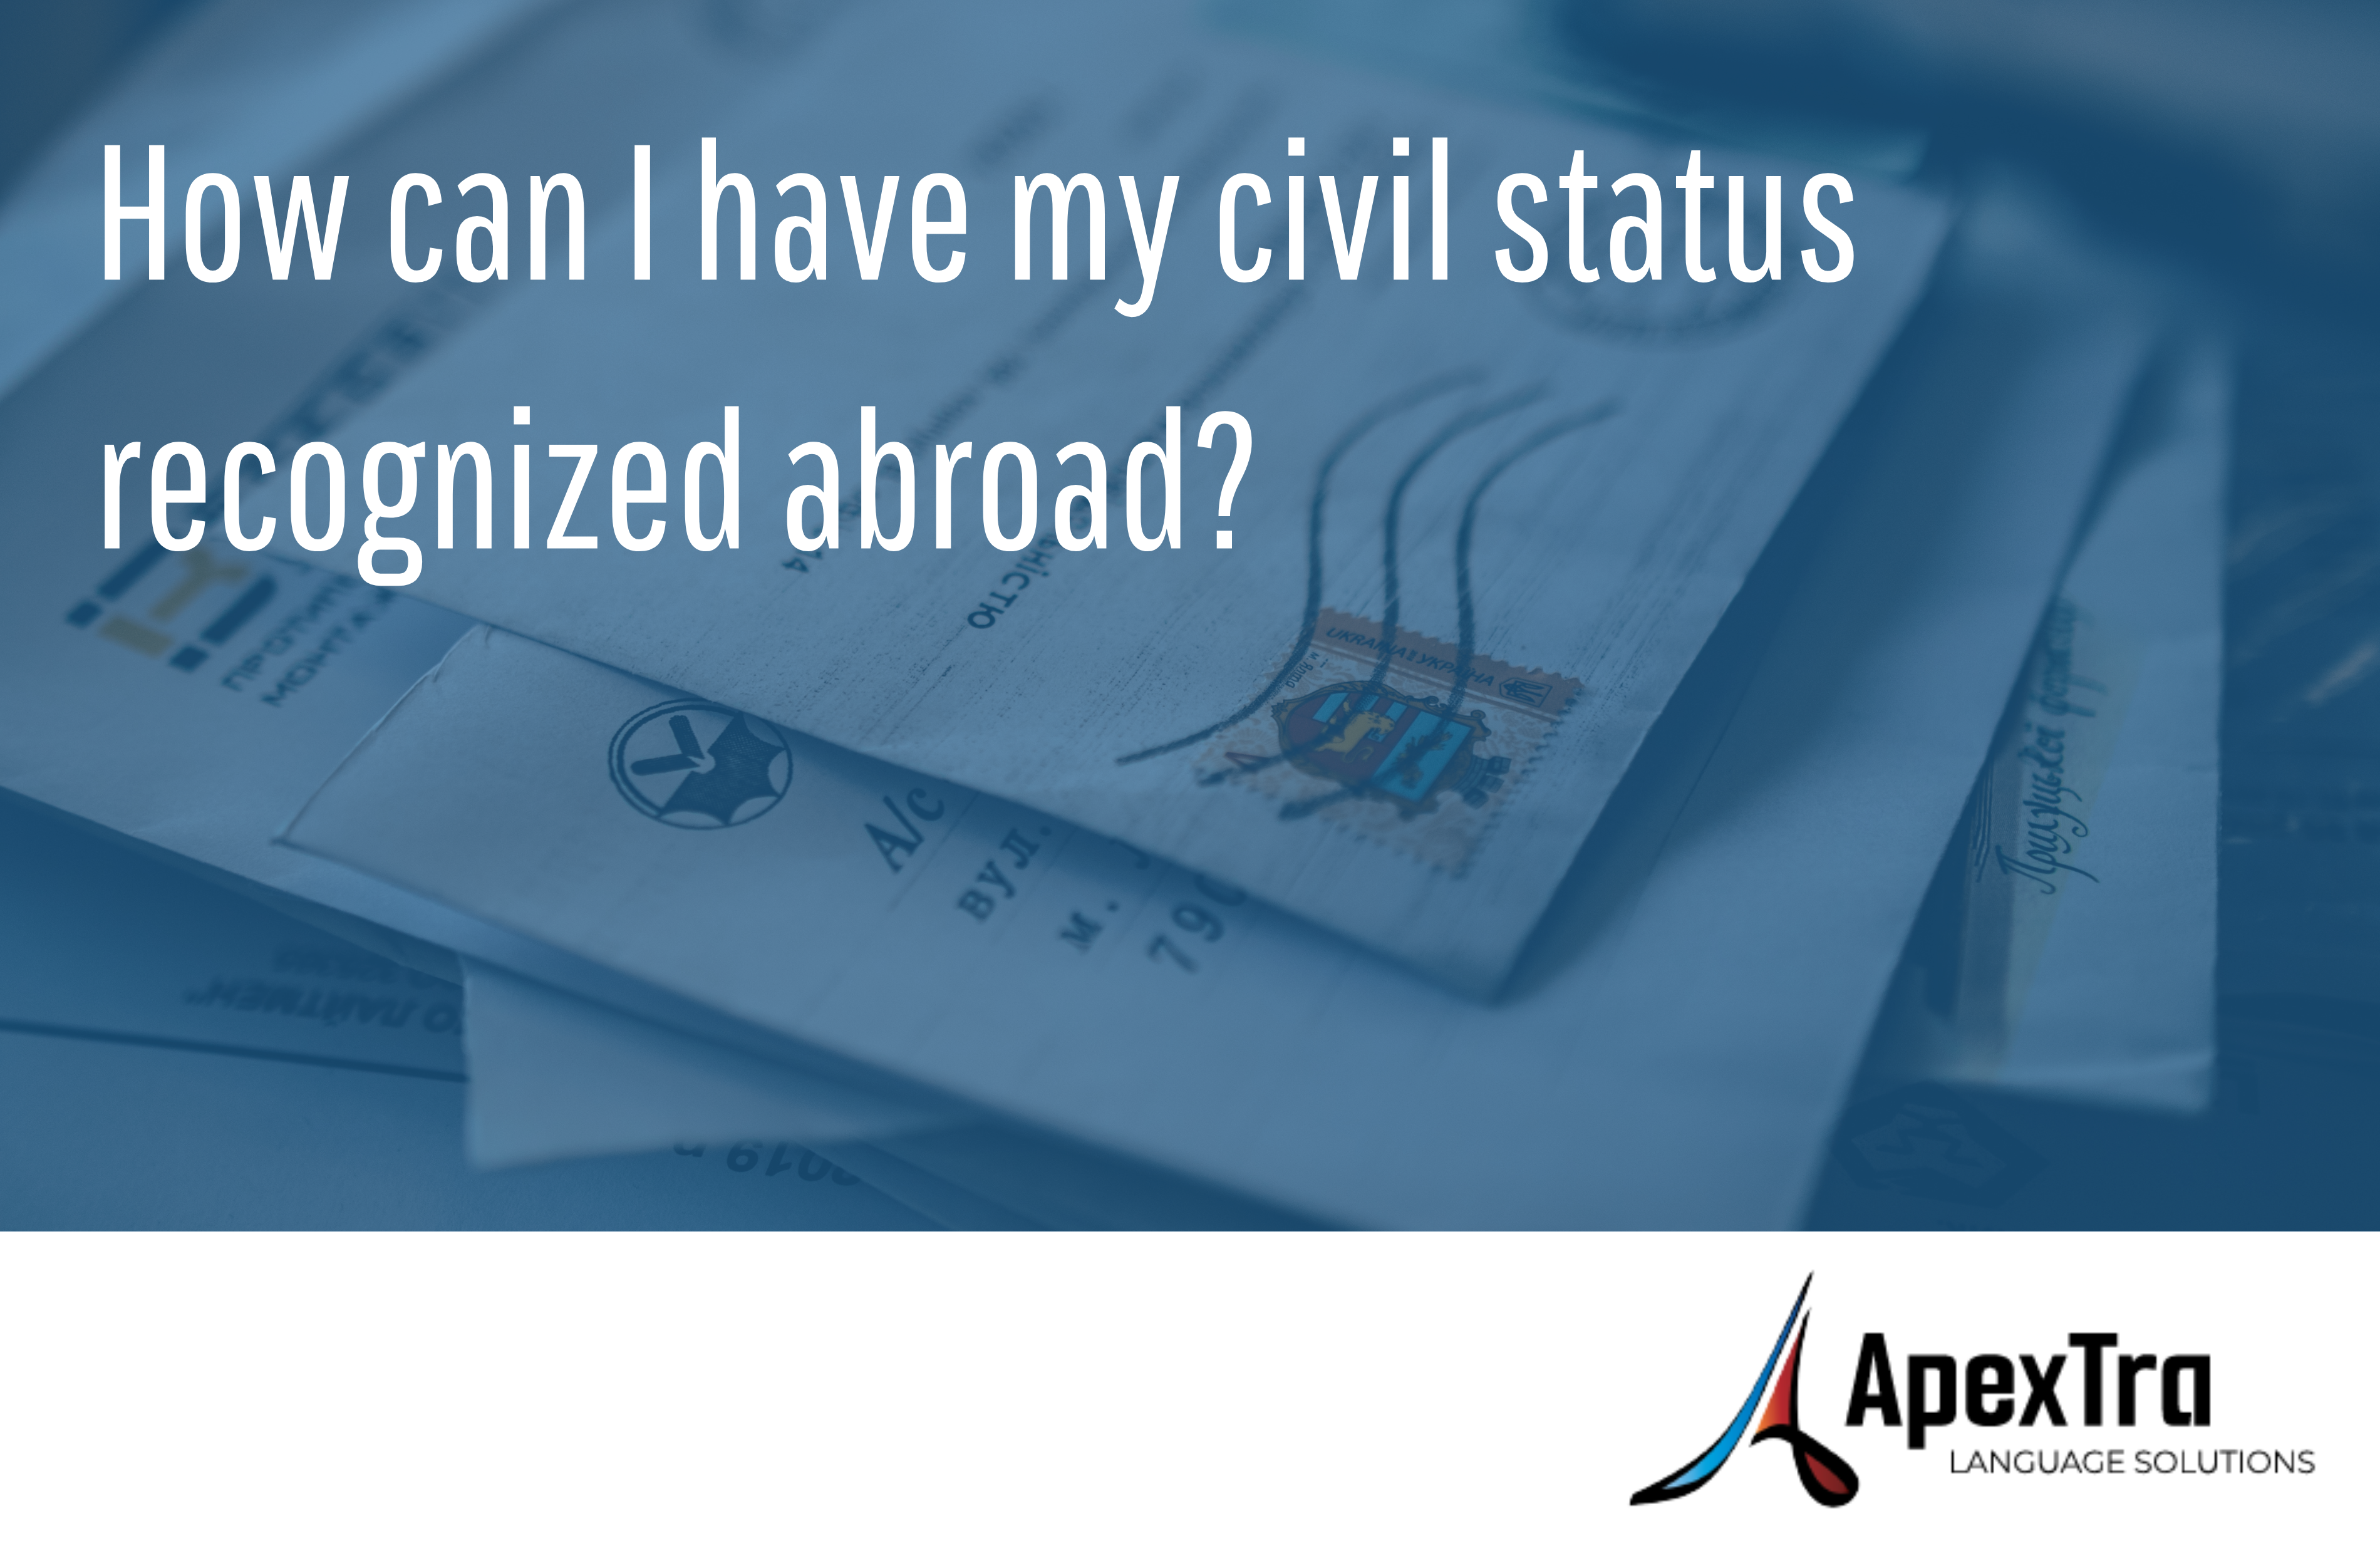 Comment faire reconnaître mon état civil à l'étranger ? Logo Apextra